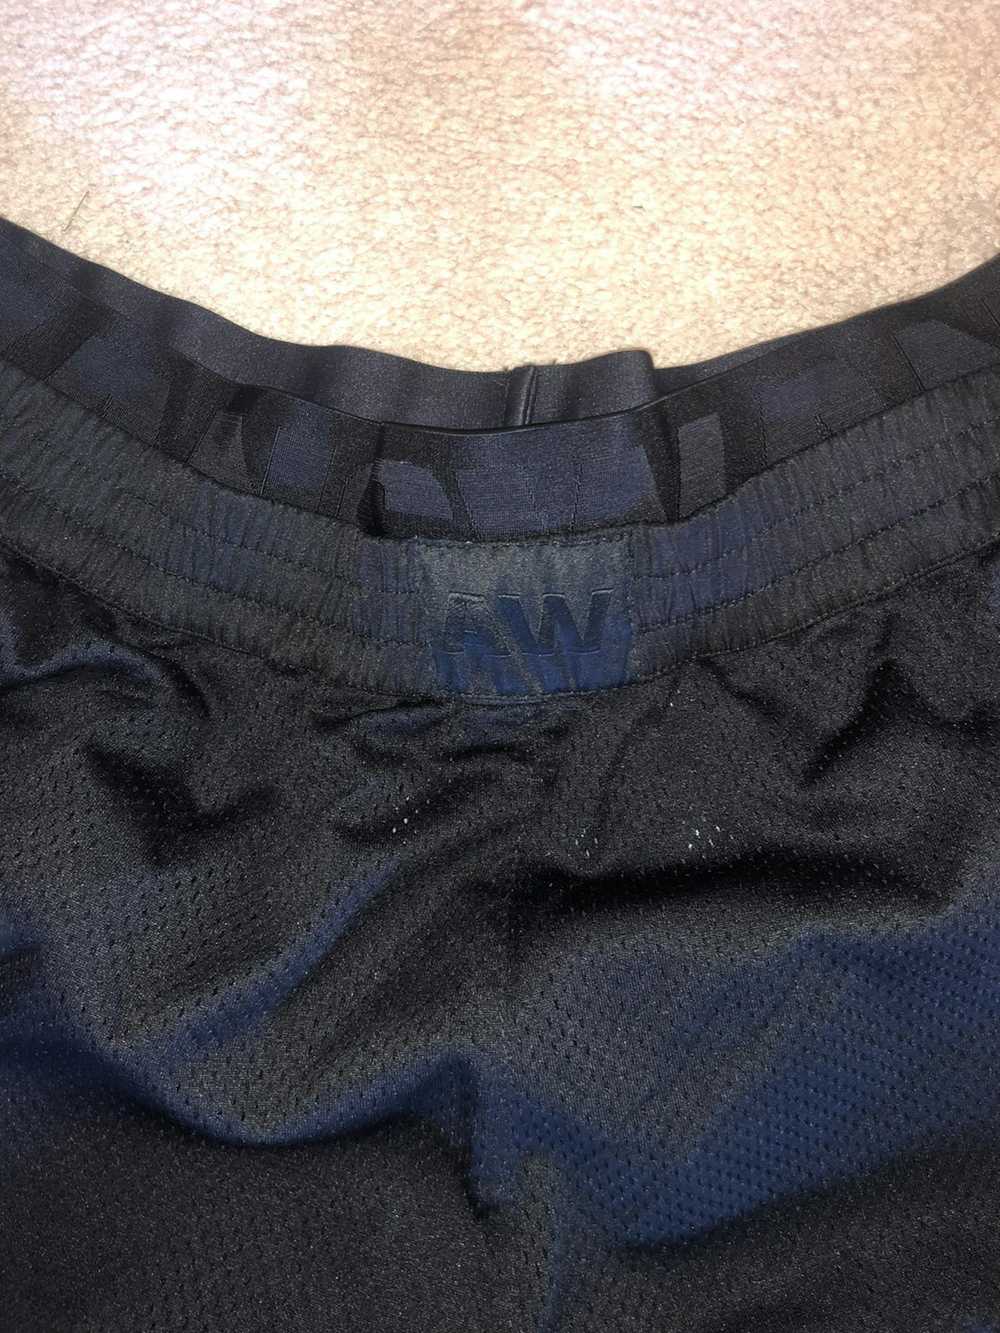 Alexander Wang × H&M ALEXANDER WANG X H&M Shorts - image 4